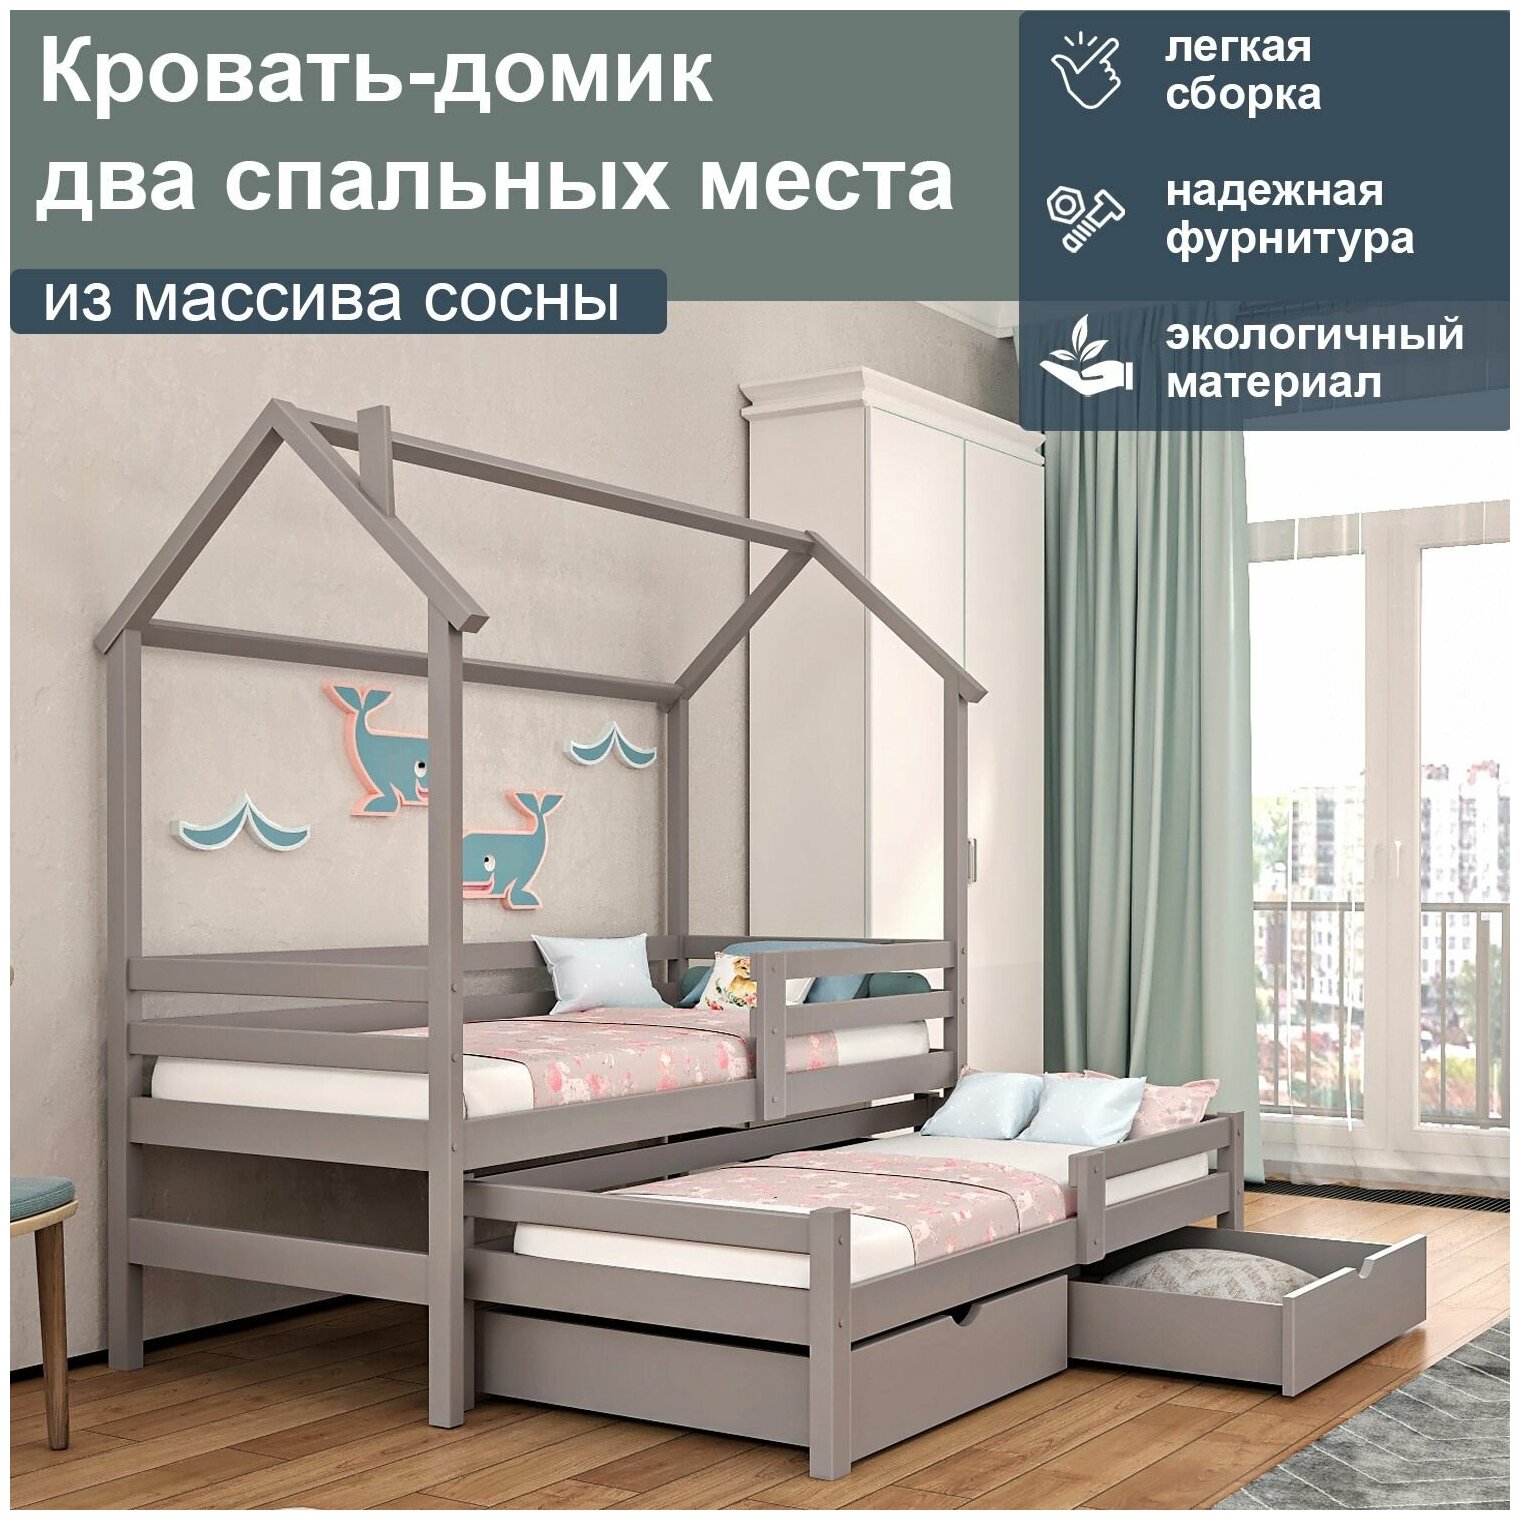 Кровать-домик двухъярусная с выдвижным местом из массива сосны без ящиков